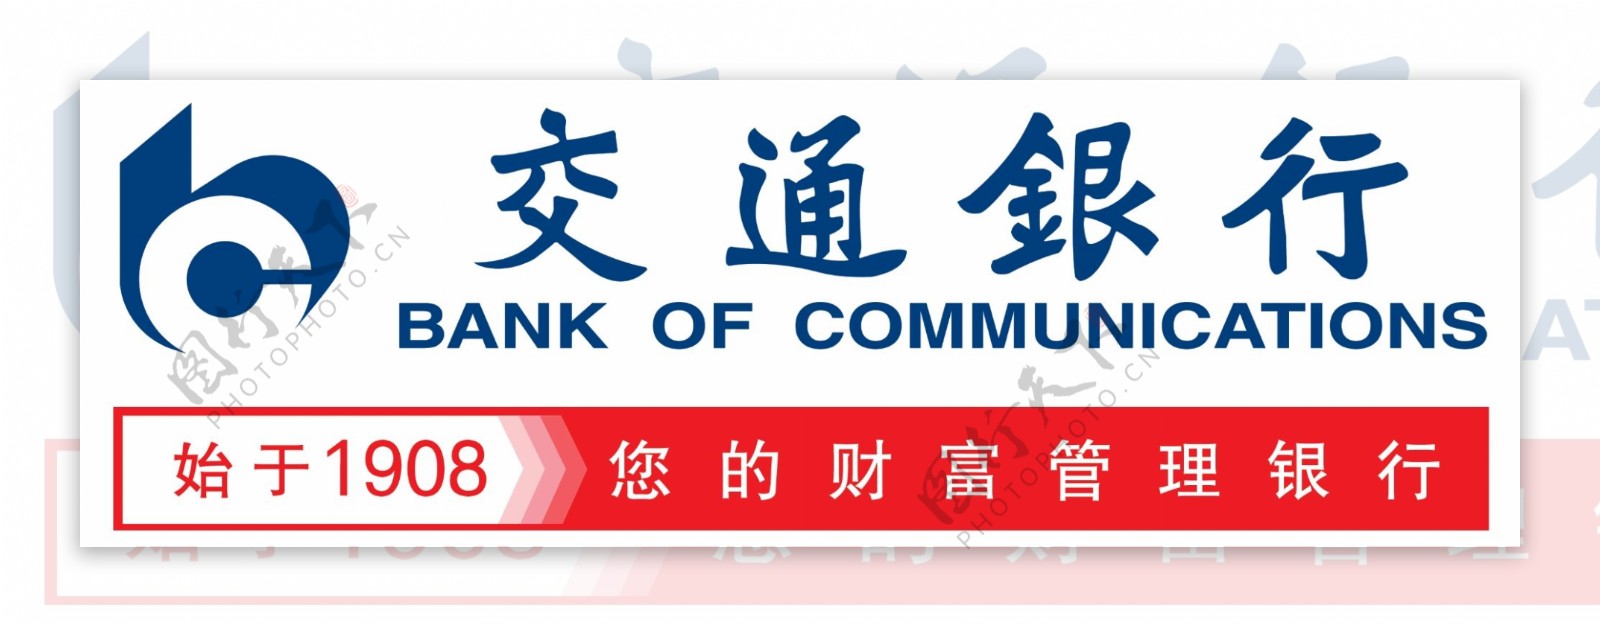 交通银行新标志图片